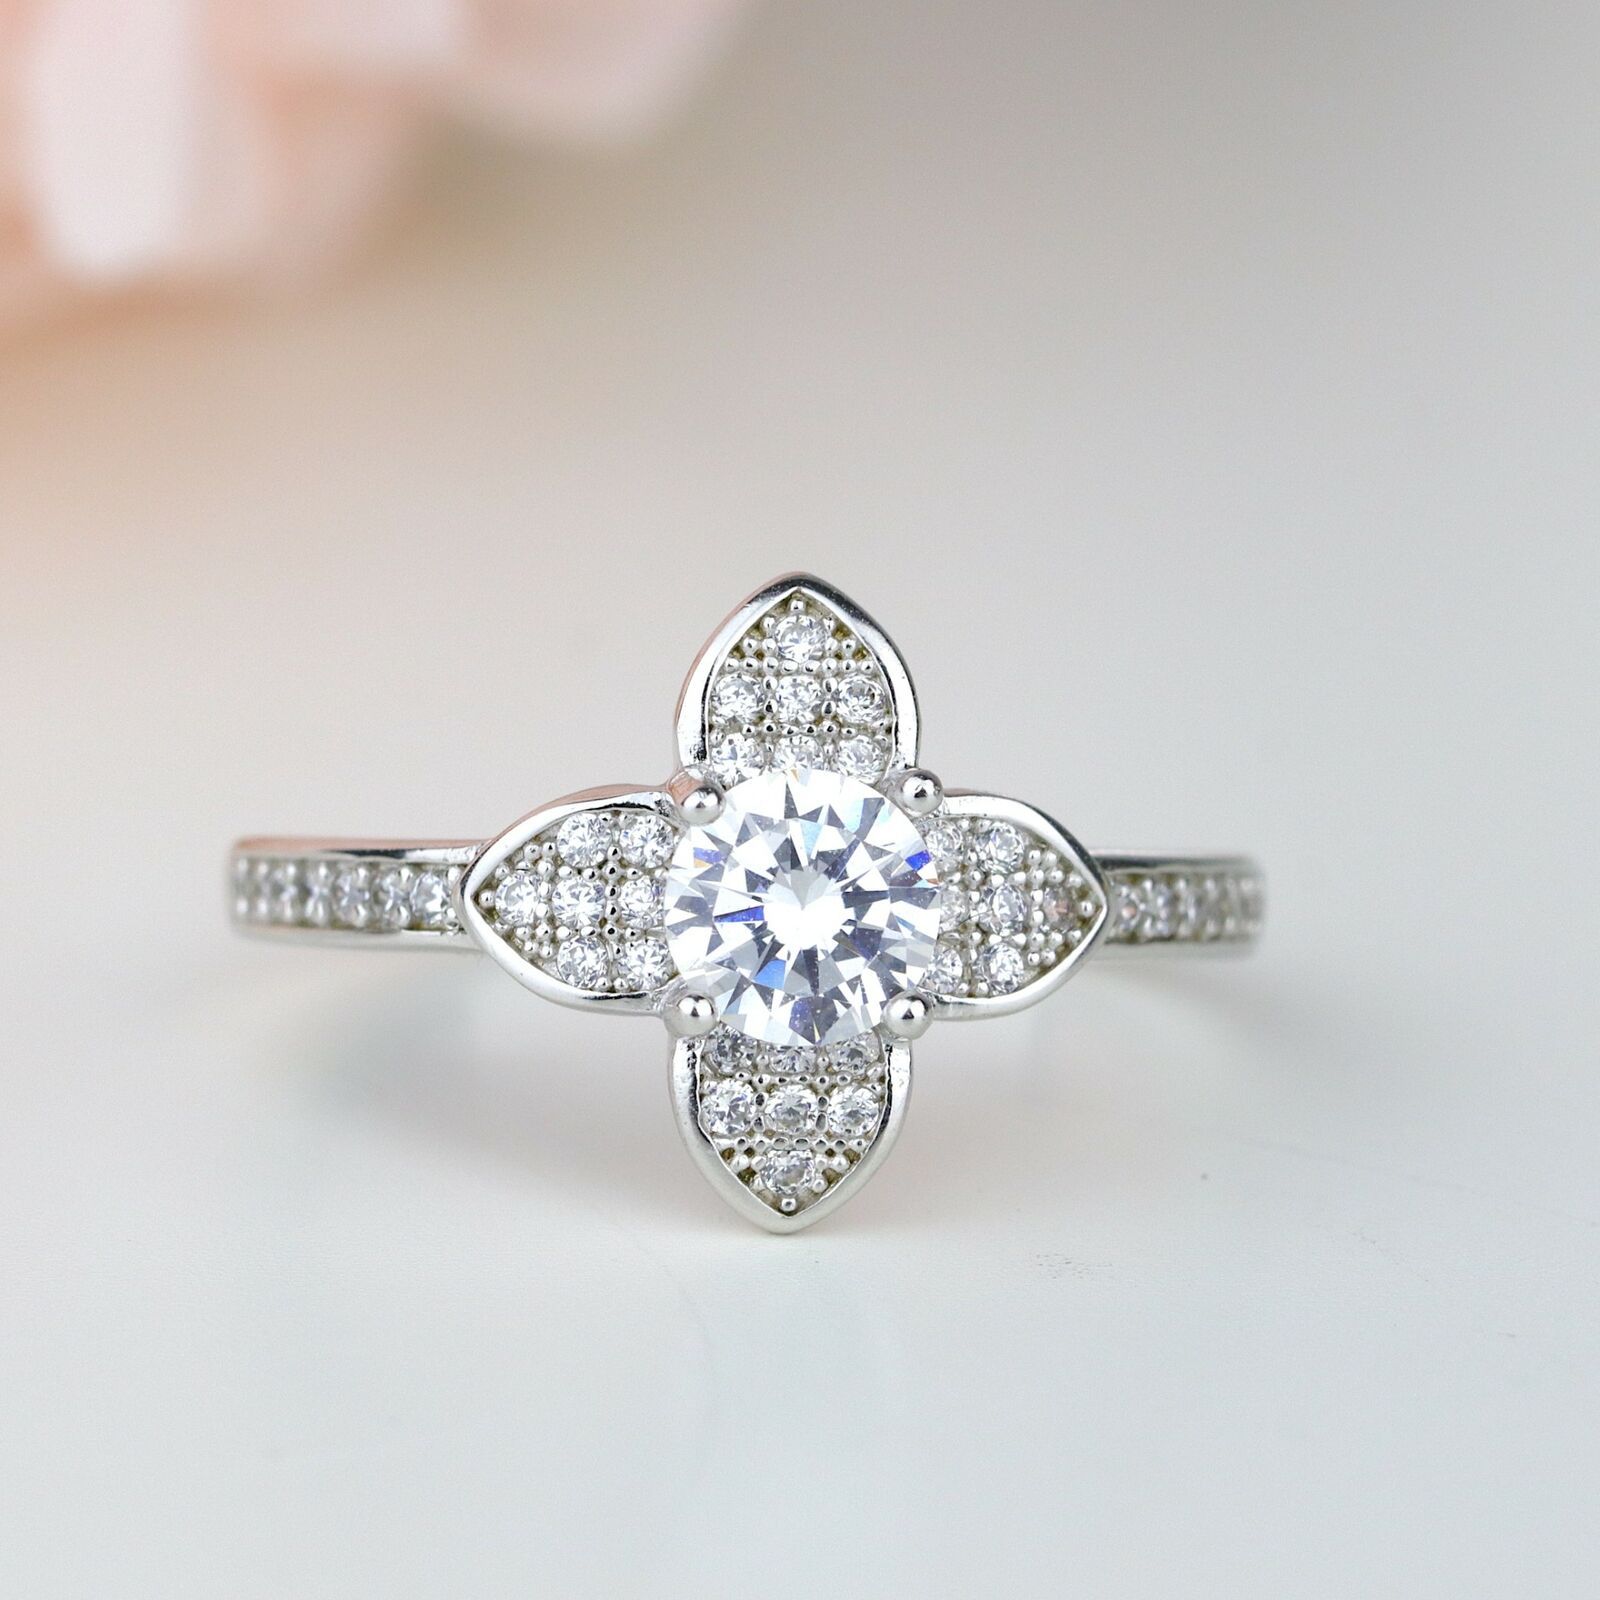 Vintage Floral Four-leaf Clover Engagement Ring Promise Ring Wedding Ring